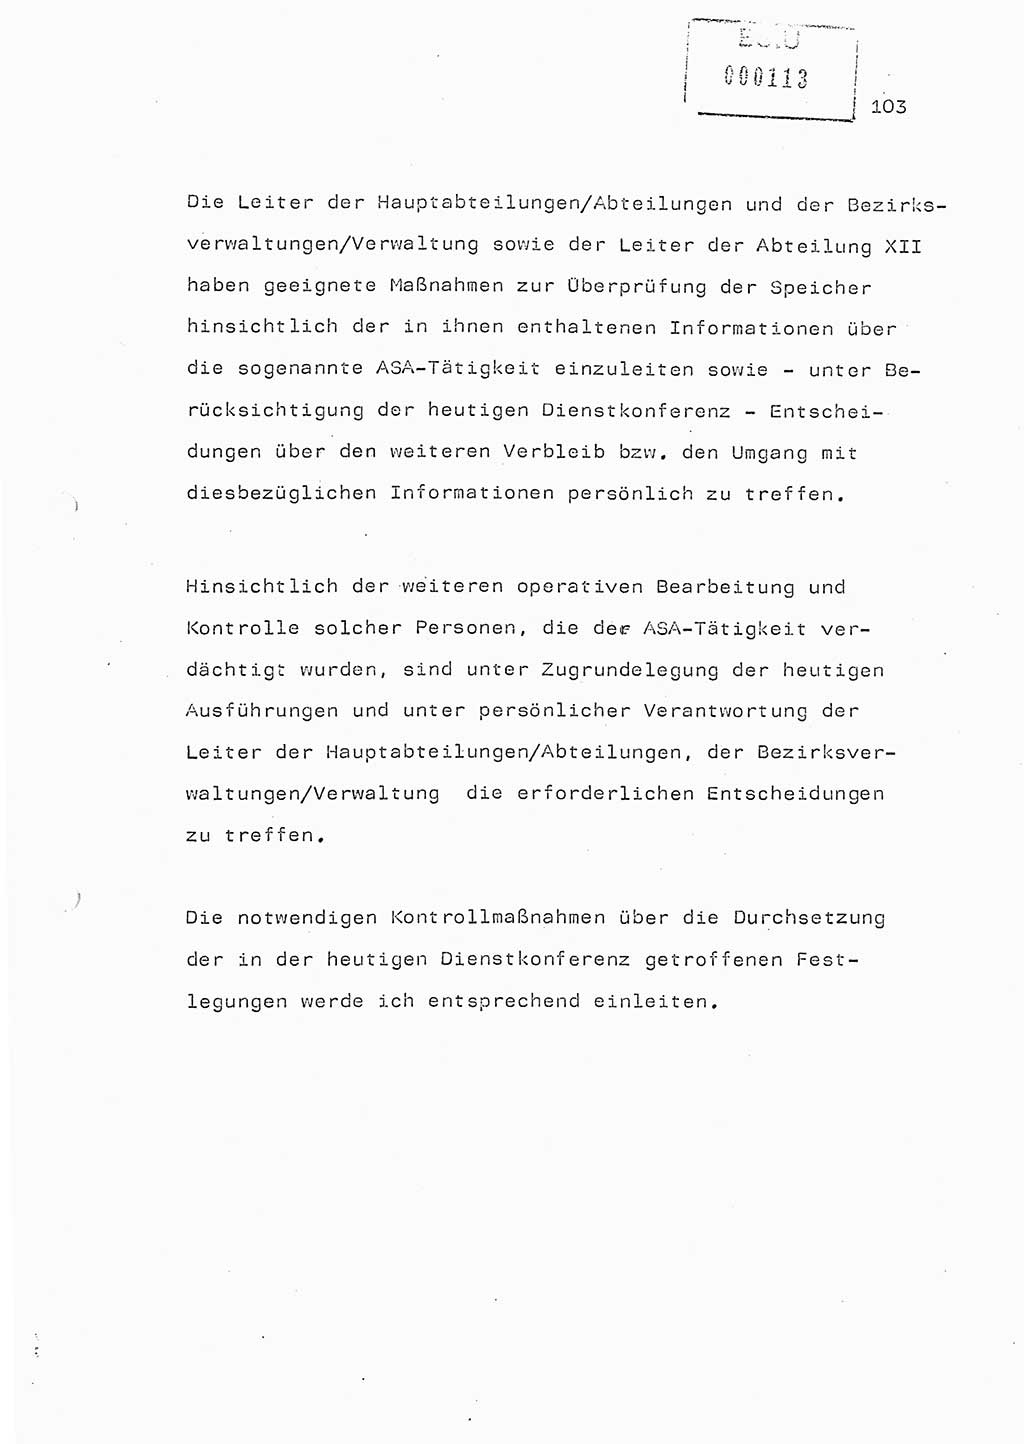 Referat (Generaloberst Erich Mielke) auf der Zentralen Dienstkonferenz am 24.5.1979 [Ministerium für Staatssicherheit (MfS), Deutsche Demokratische Republik (DDR), Der Minister], Berlin 1979, Seite 103 (Ref. DK DDR MfS Min. /79 1979, S. 103)